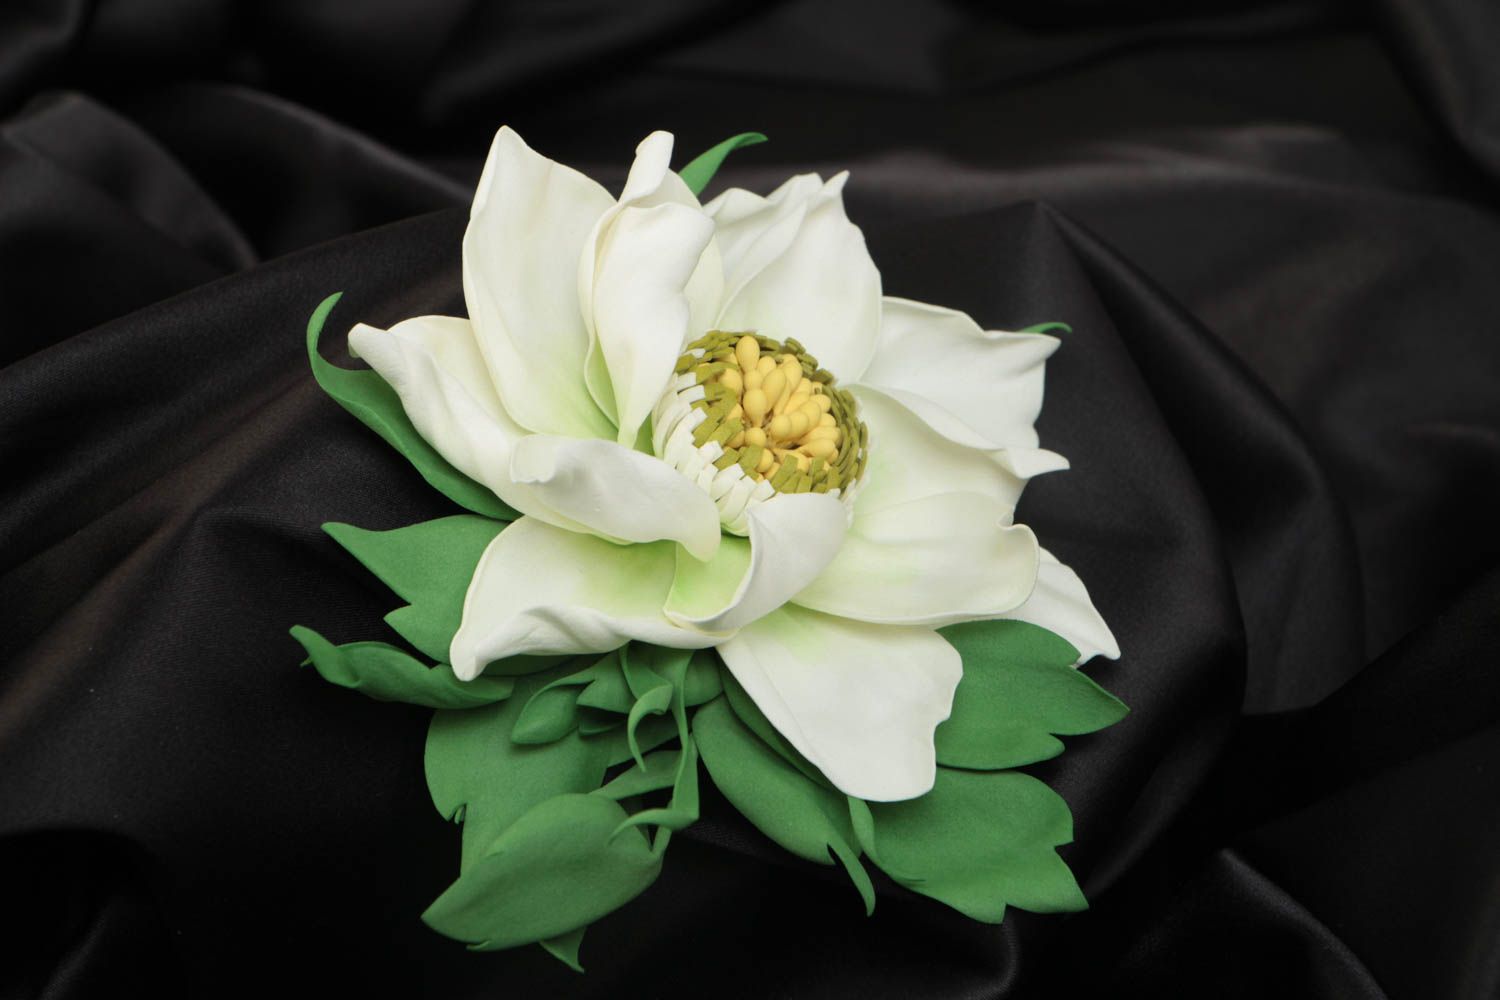 Broche artesanal de foamiran con forma de flor vaporosa de menta foto 1